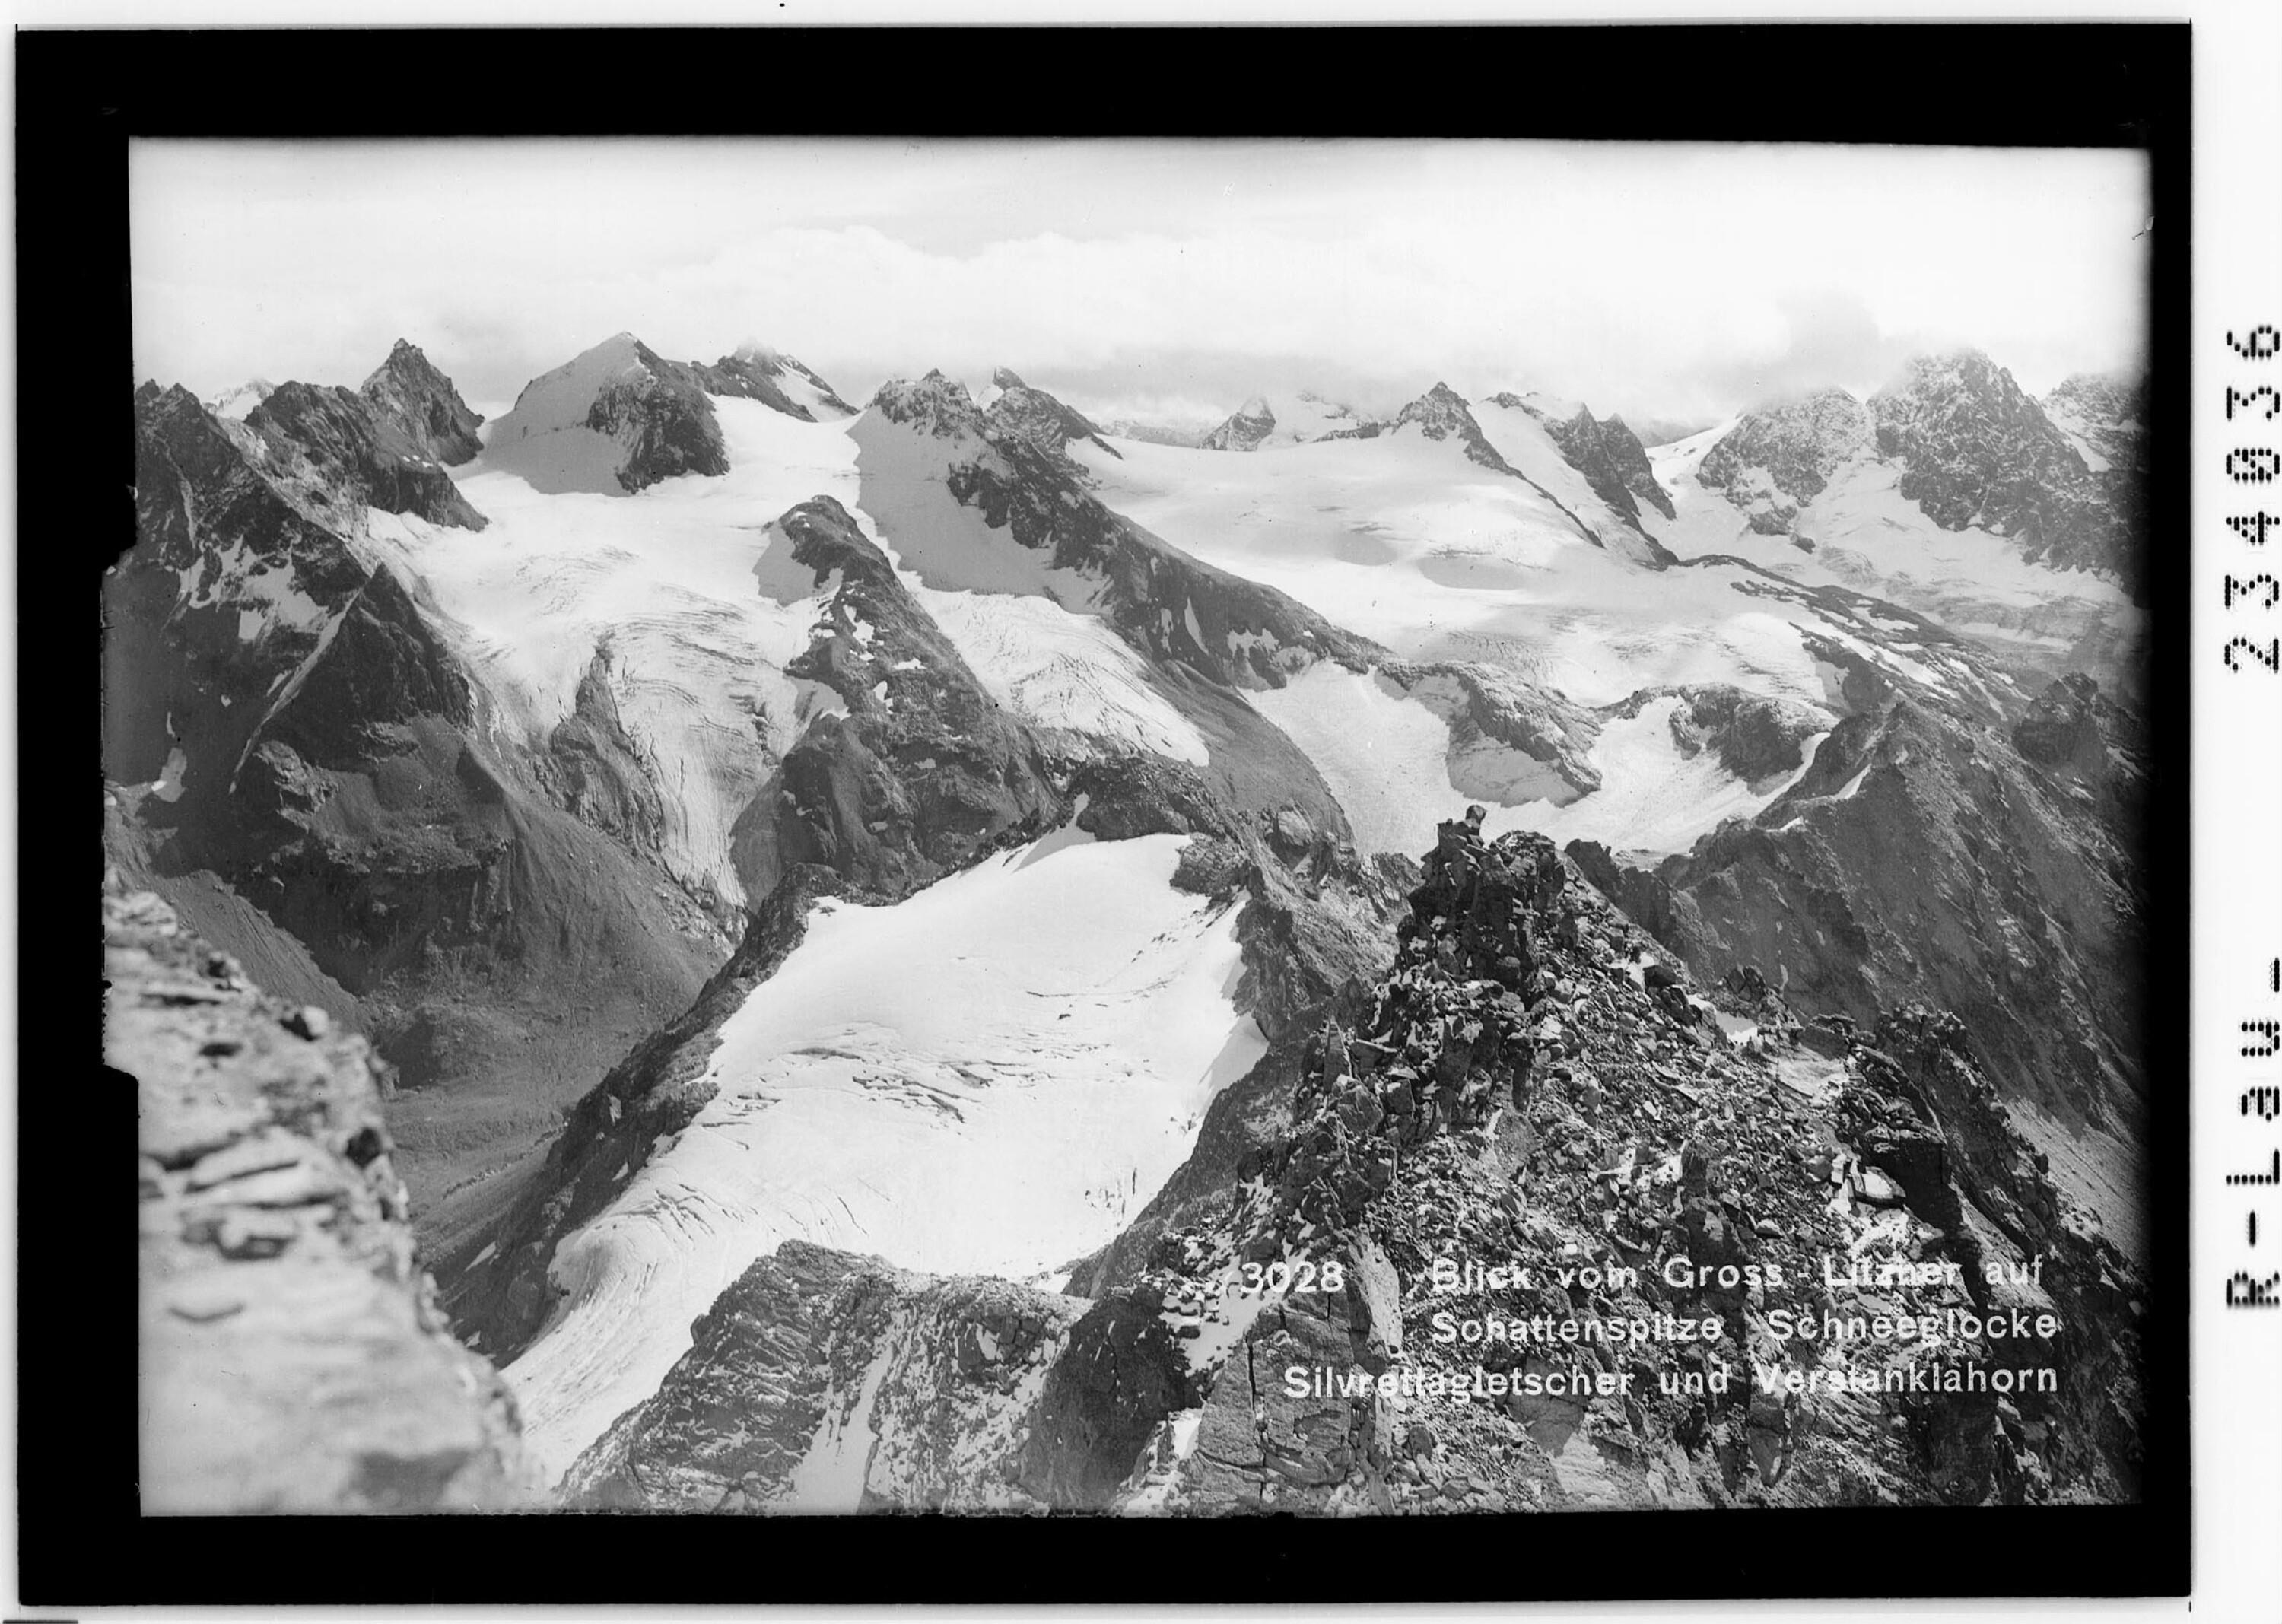 Blick vom Groß Litzner auf Schattenspitze, Schneeglocke, Silvrettagletscher und Verstanklahorn></div>


    <hr>
    <div class=